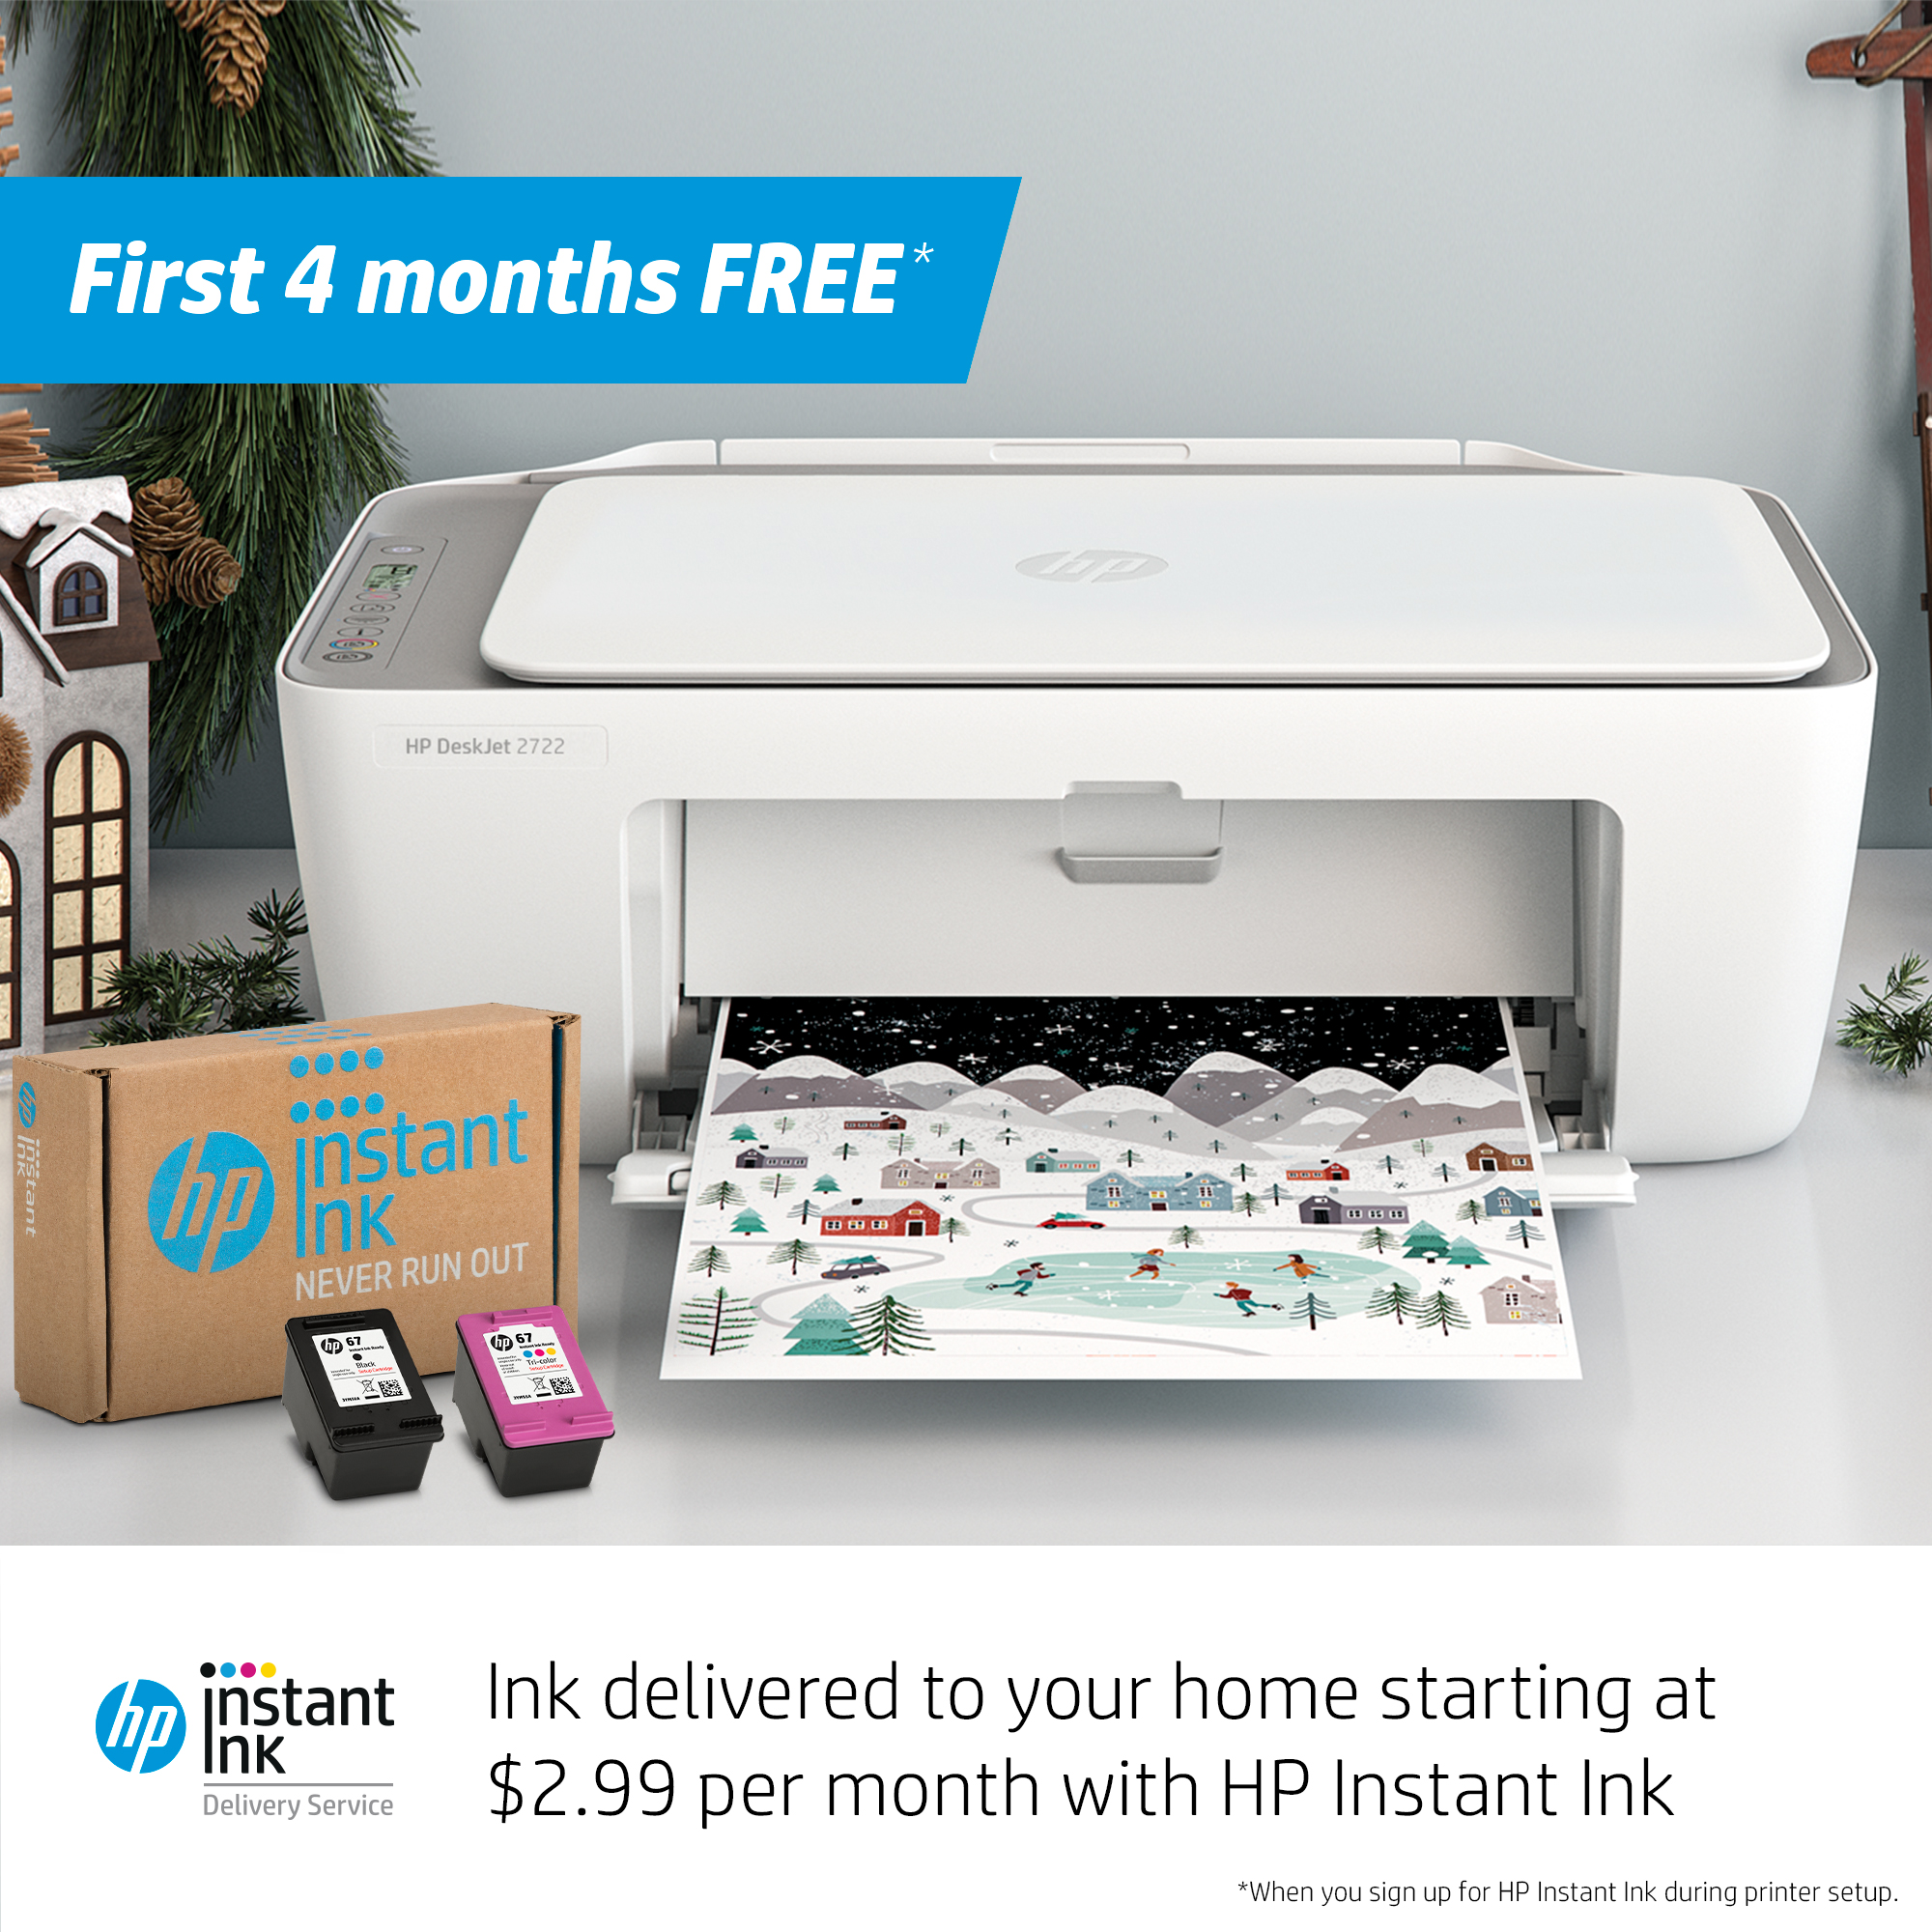 HP DeskJet 2722 All-in-One Printer, White - image 5 of 10